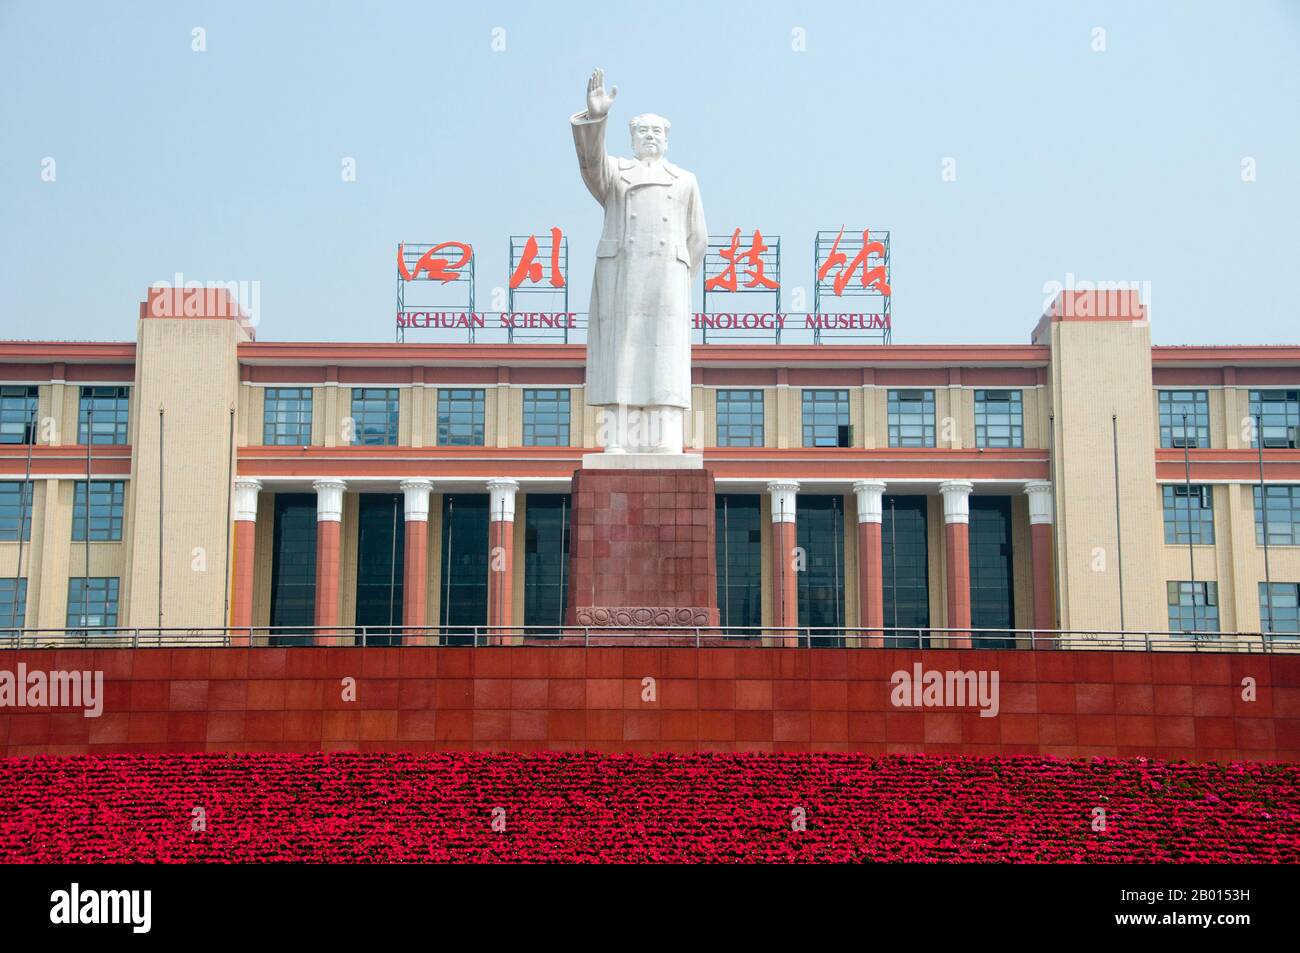 Mao Zedong, auch als Mao Tse-tung (26. Dezember 1893 - 9. September 1976) transliteriert, war ein chinesischer kommunistischer Revolutionär, Guerilla-Kampfstratege, Autor, politischer Theoretiker und Führer der chinesischen Revolution. Er wurde im Allgemeinen als Chairman Mao bezeichnet und war der Architekt der Volksrepublik China (PRC) von ihrer Gründung im Jahr 1949 an und hatte bis zu seinem Tod im Jahr 1976 die autoritäre Kontrolle über die Nation inne. Sein theoretischer Beitrag zum Marxismus-Leninismus, zusammen mit seinen militärischen Strategien und der Marke der politischen Politik, werden heute kollektiv als Maoismus bezeichnet. Chengdu, bekannt für Stockfoto